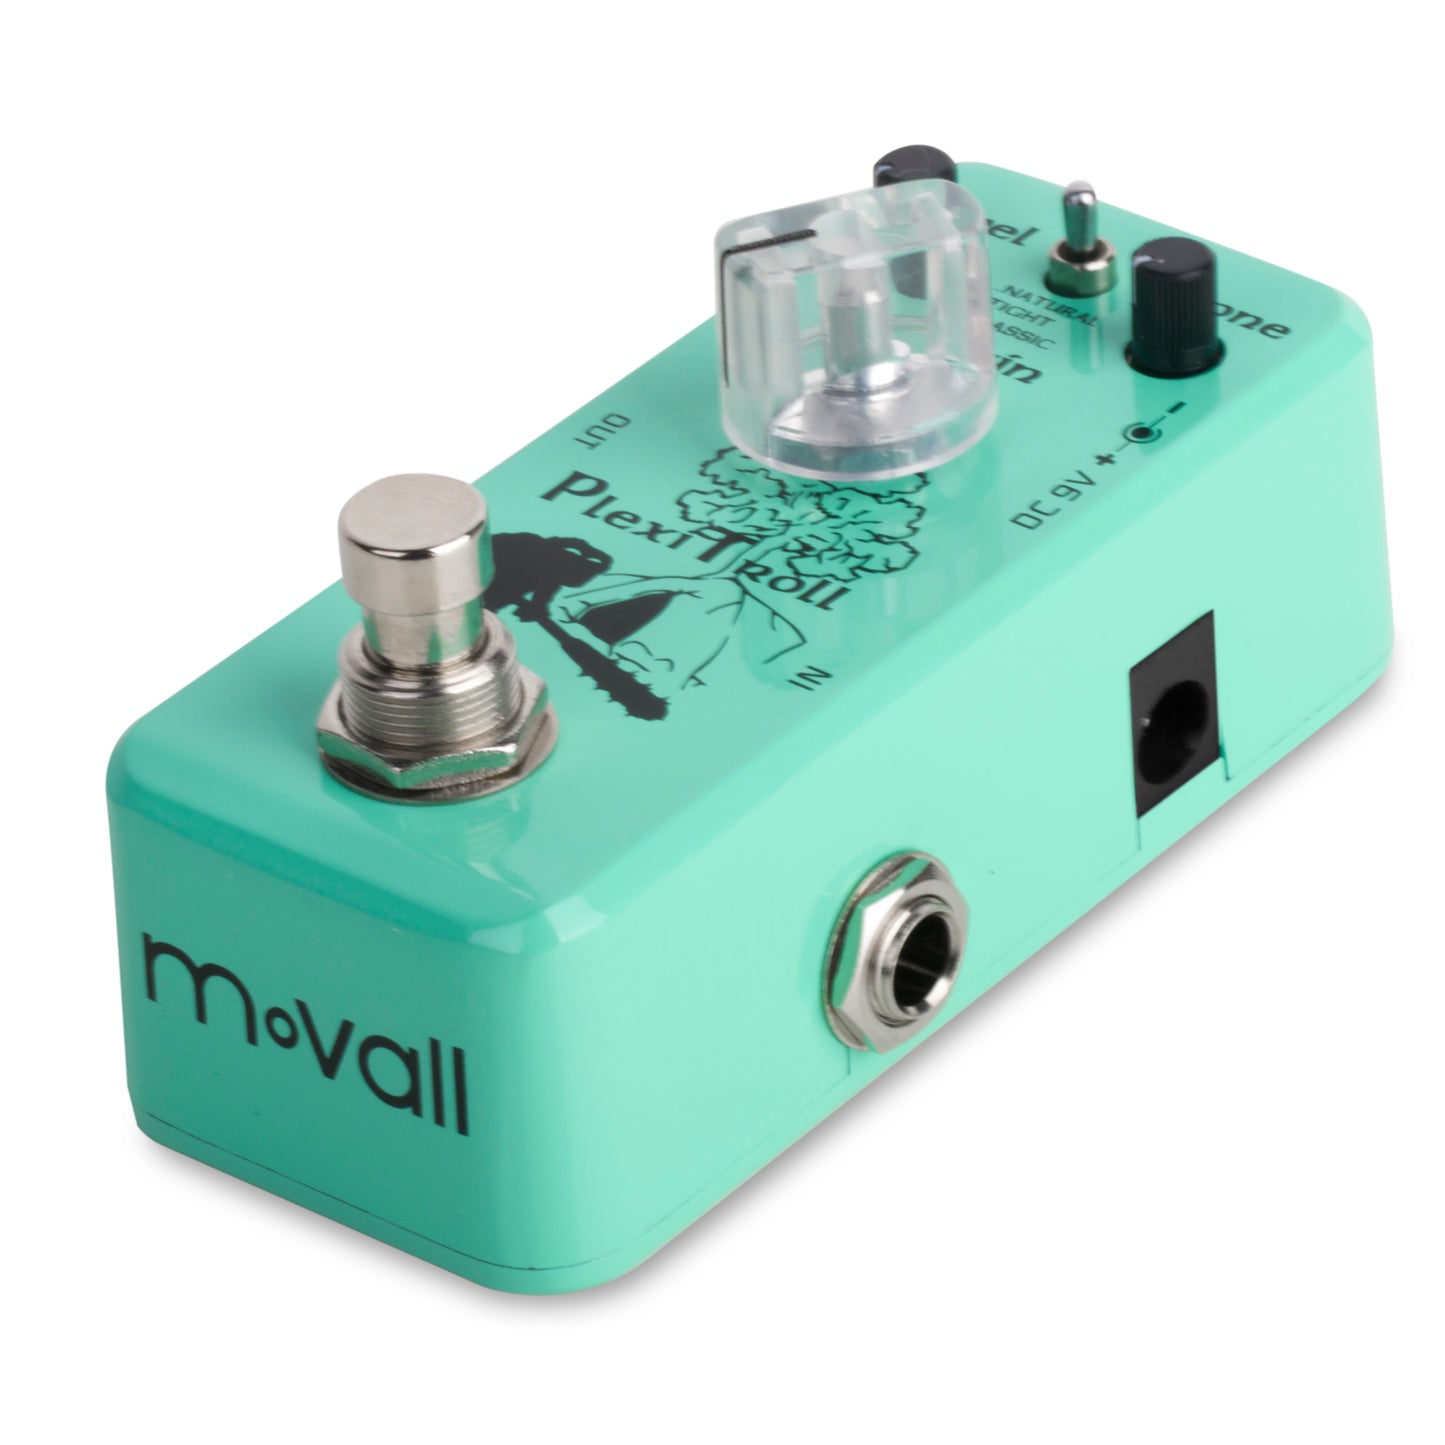 Movall MP-302 PlexiTroll Mini Distortion Pedal